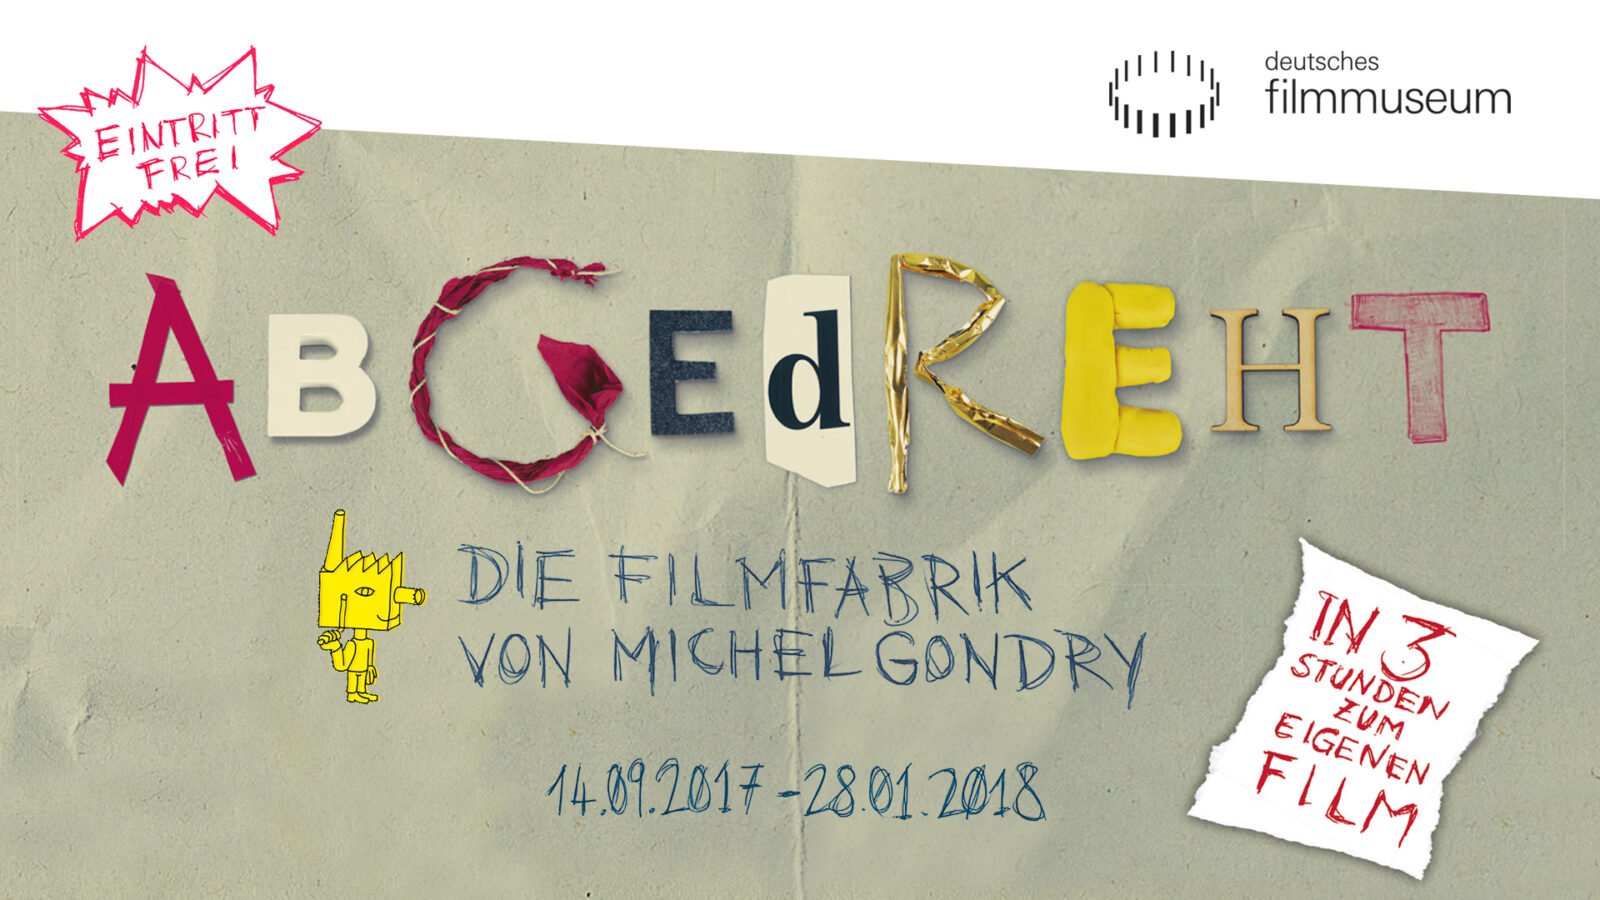 Das Logo der Ausstellung: Abgedreht! Die Filmfabrik von Michel Gondry in bunten Farben.